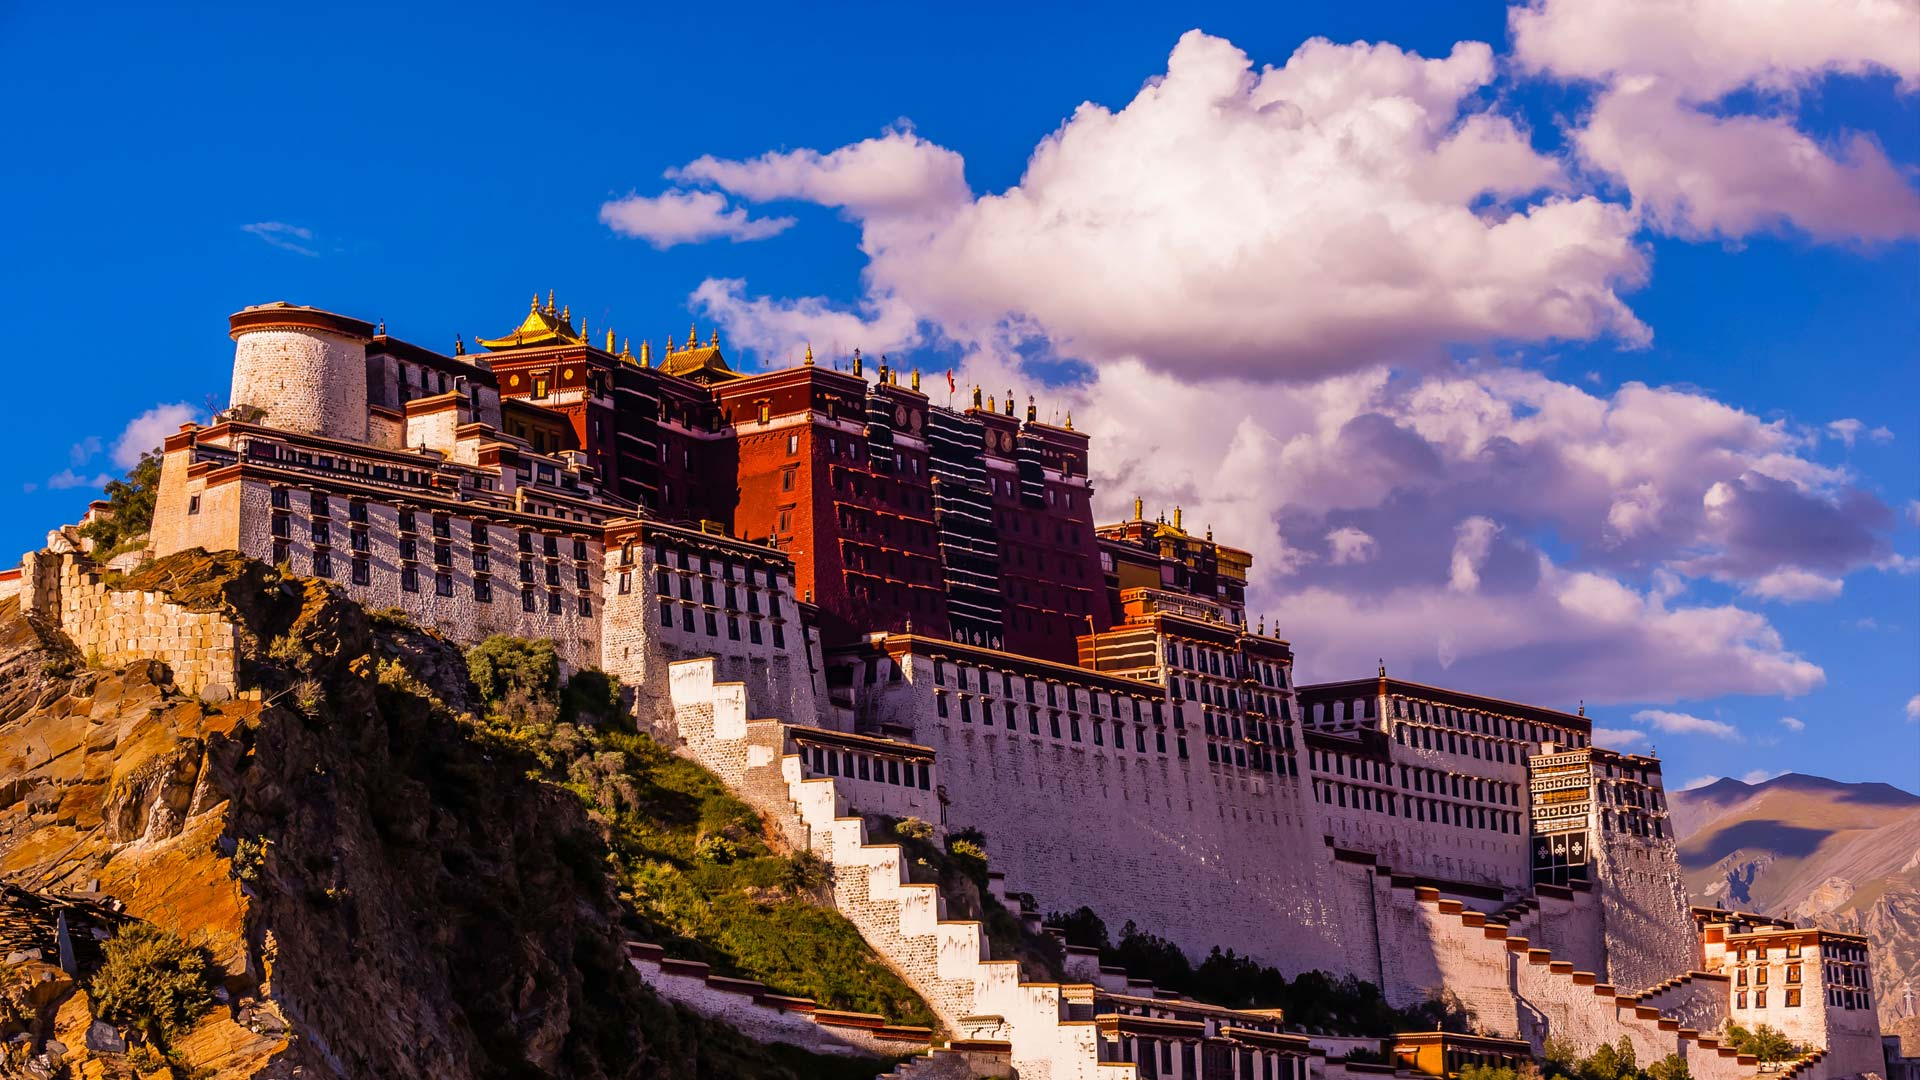 تصویر پس زمینه از دیوار بلند چین در آسمان صاف و آبی با کیفیت 8K